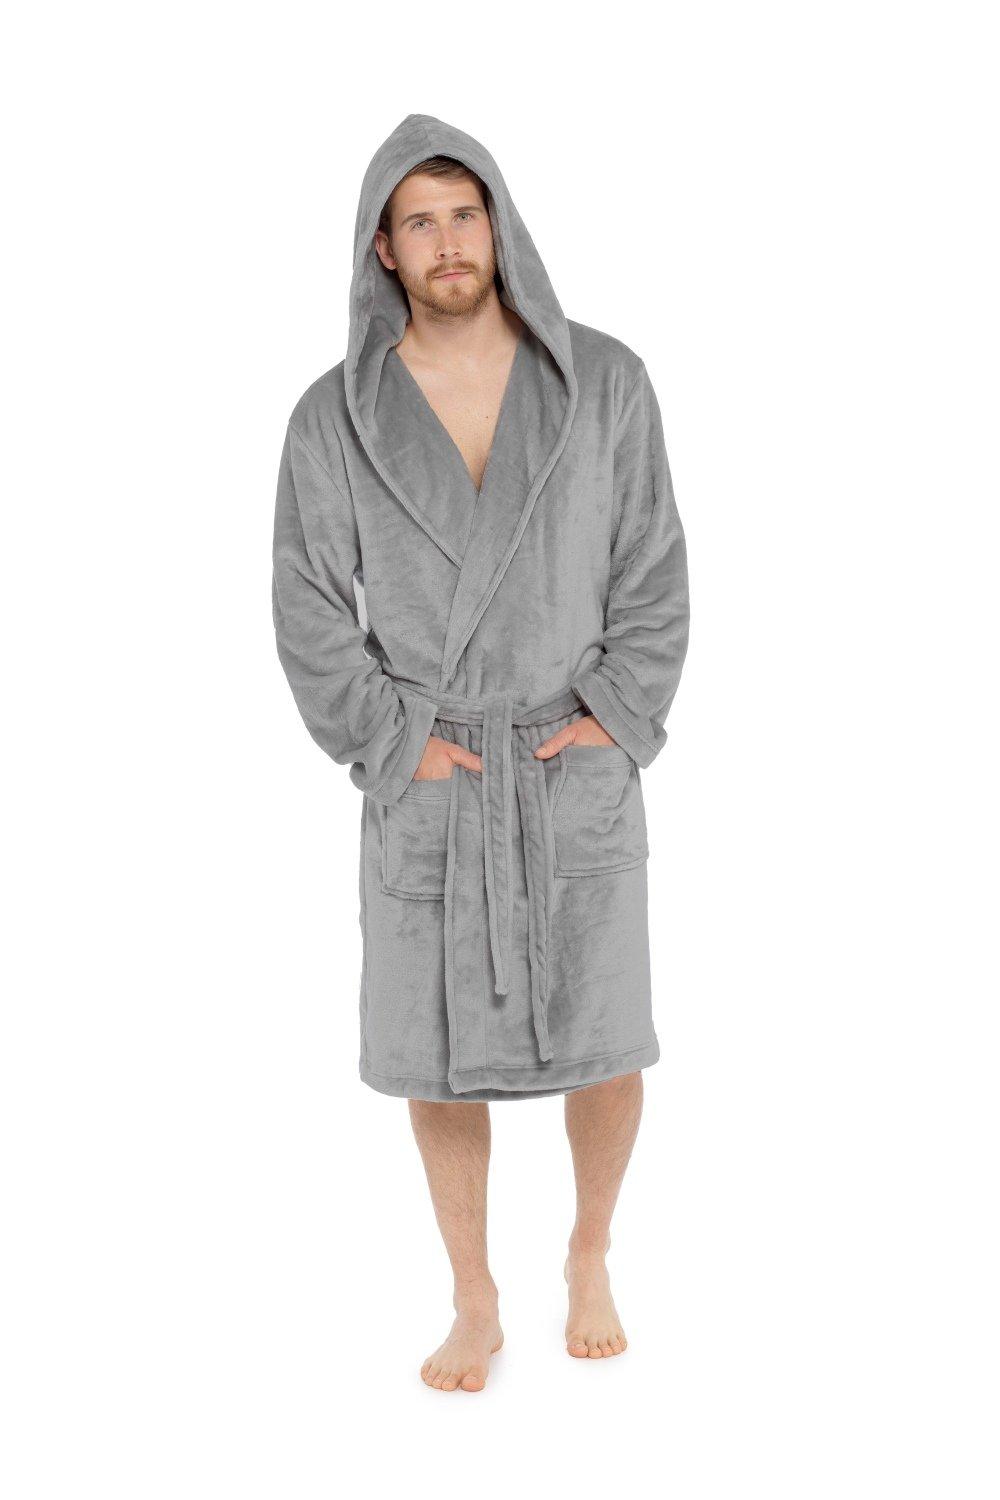 Халаты флисовые с капюшоном CityComfort, серый мужской халат с капюшоном ночной халат зимний теплый длинный флисовый халат домашняя одежда с поясом